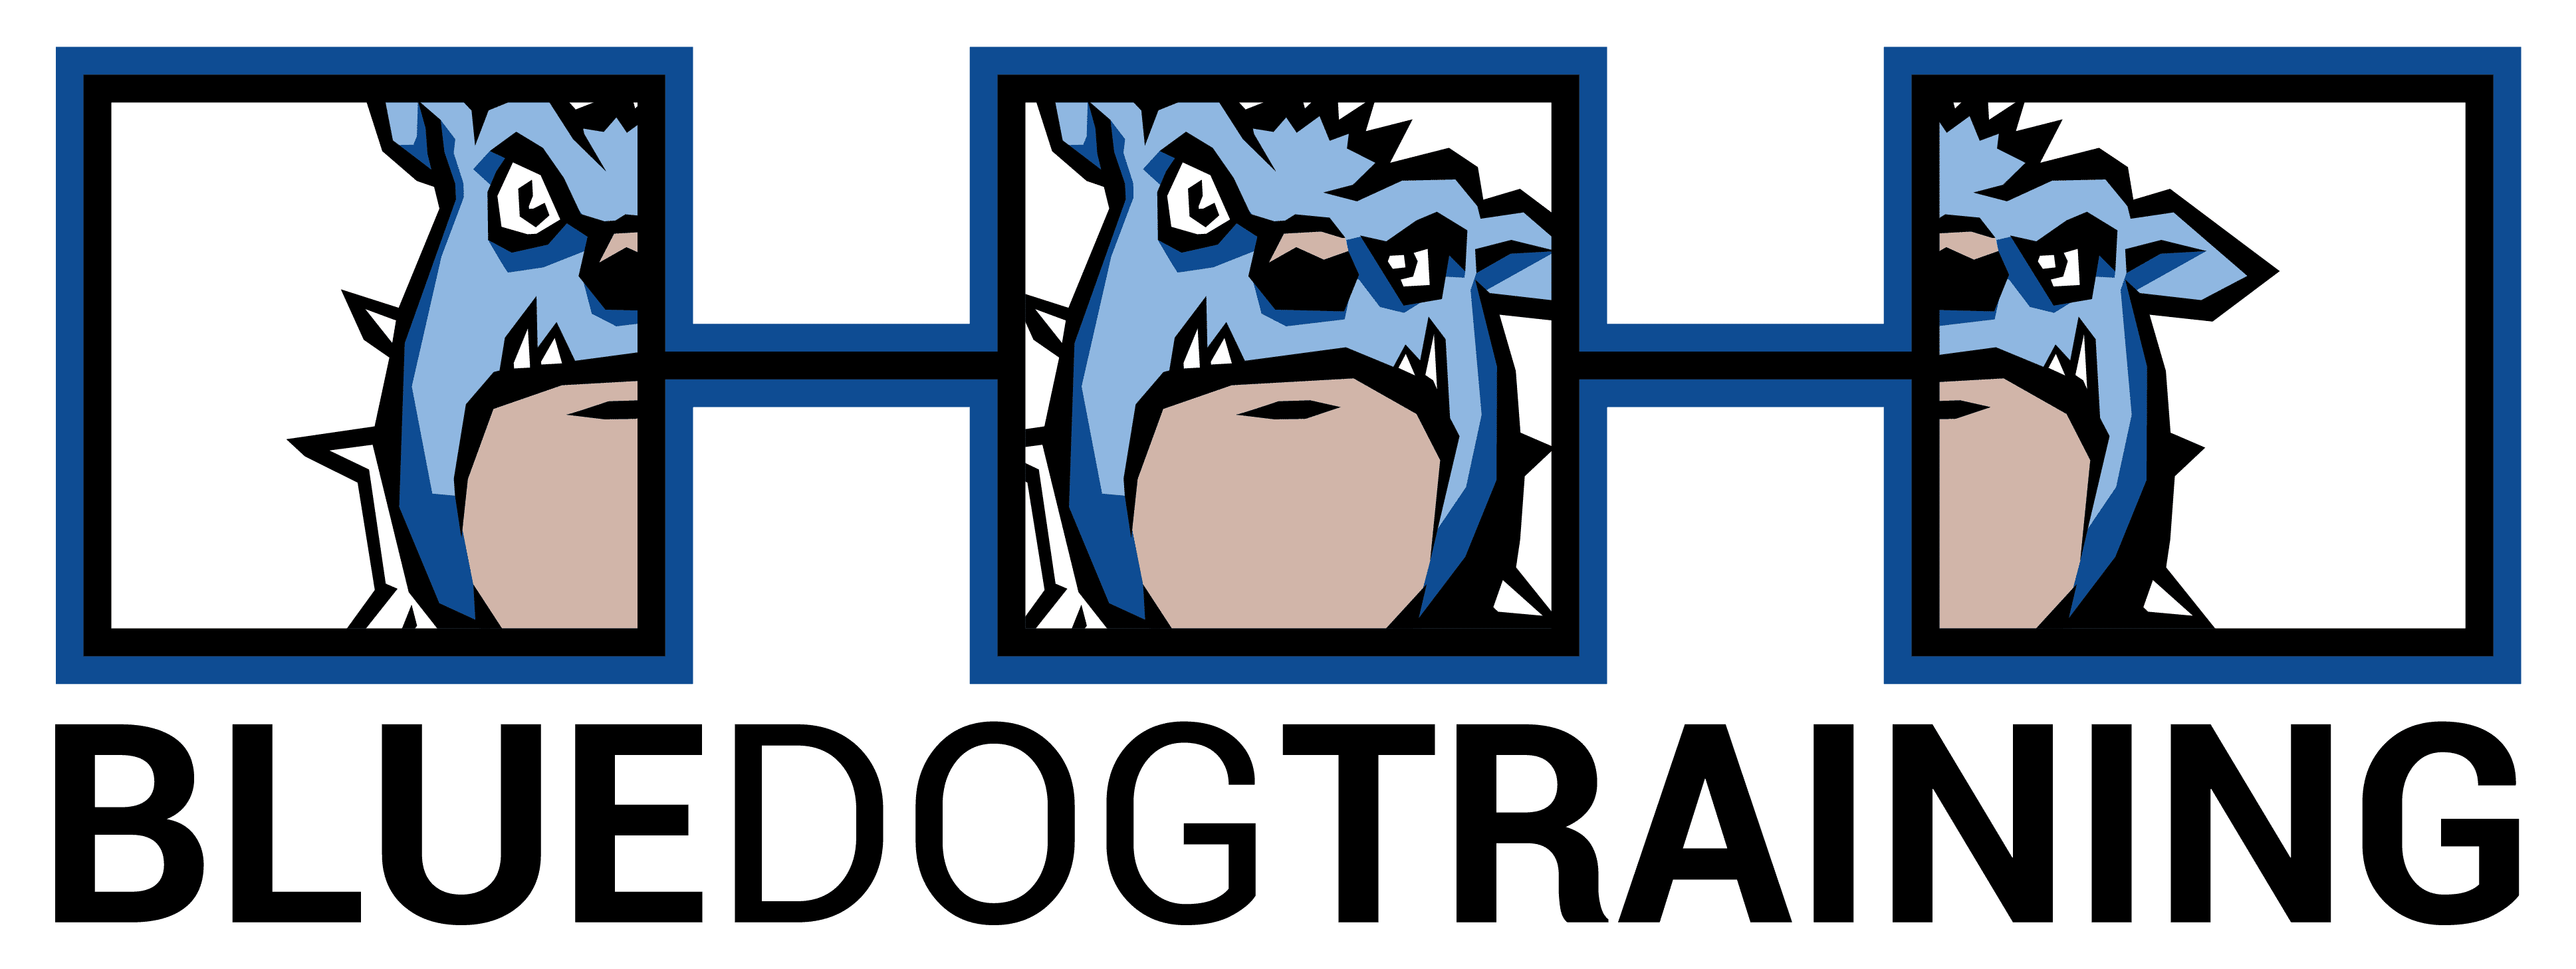 Blue Dog Training logo